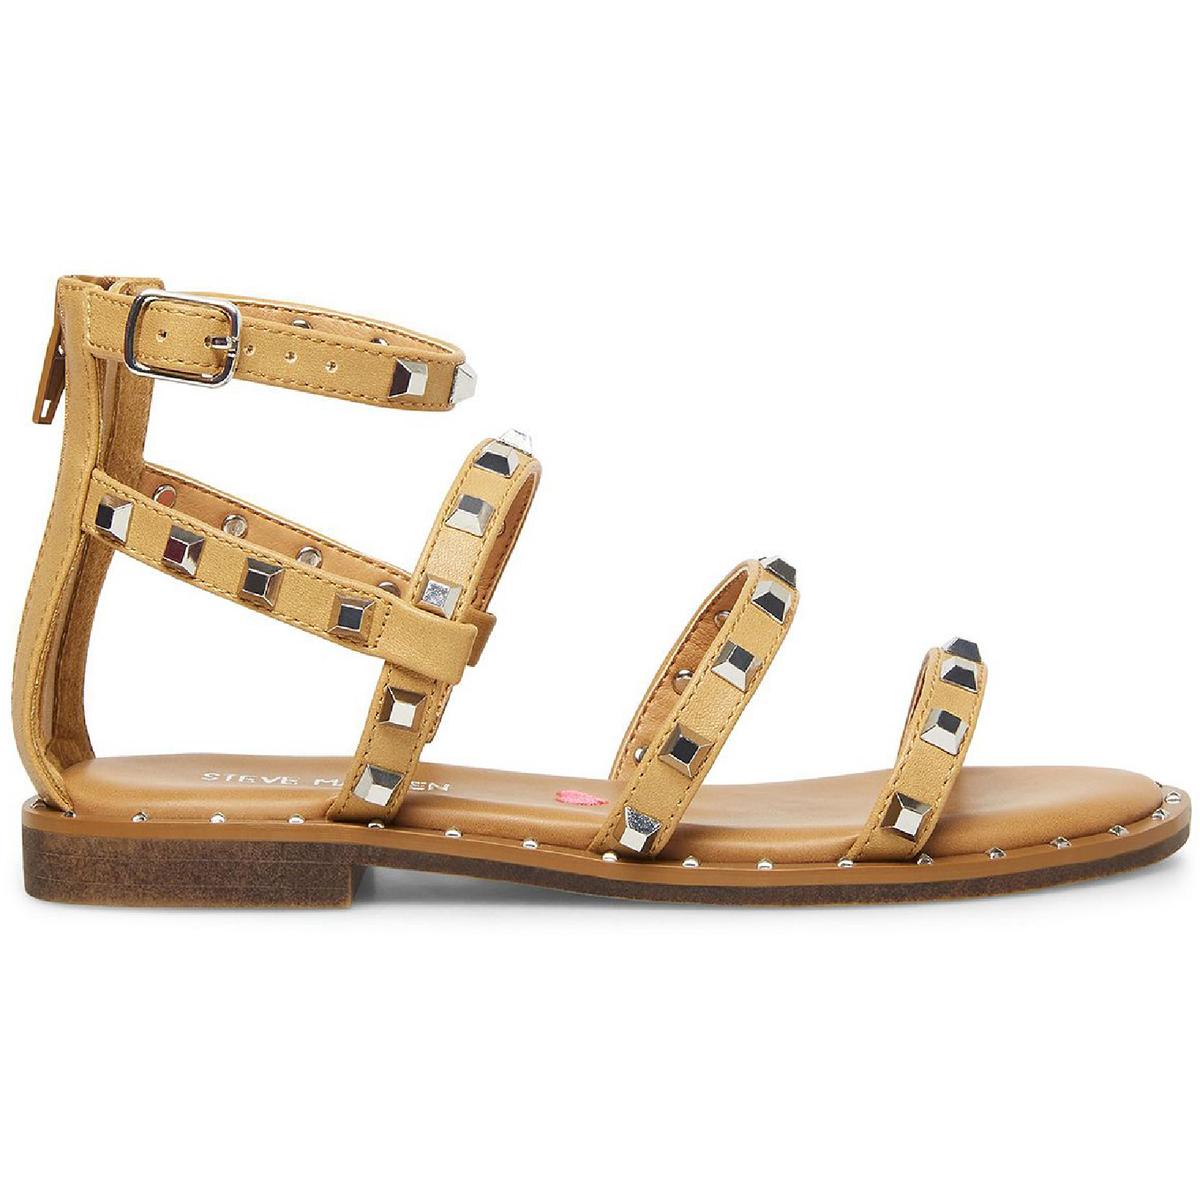 Steve Madden Girl's Travel Flats Gladiator Sandals